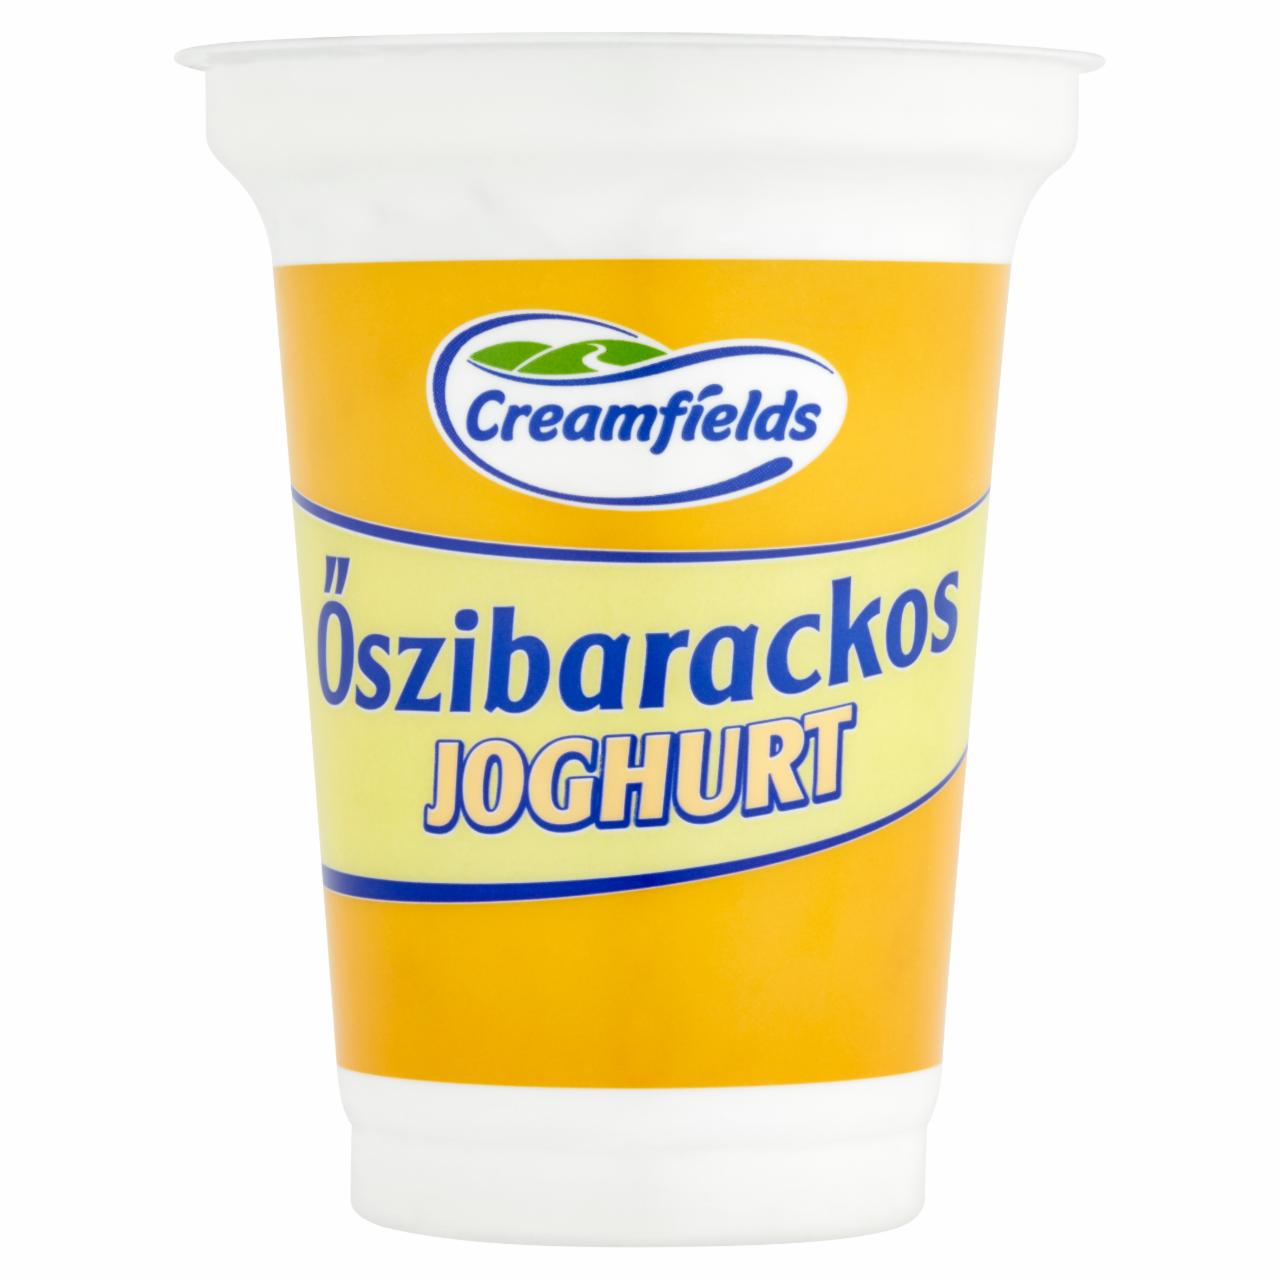 Képek - Creamfields őszibarackos joghurt 375 g